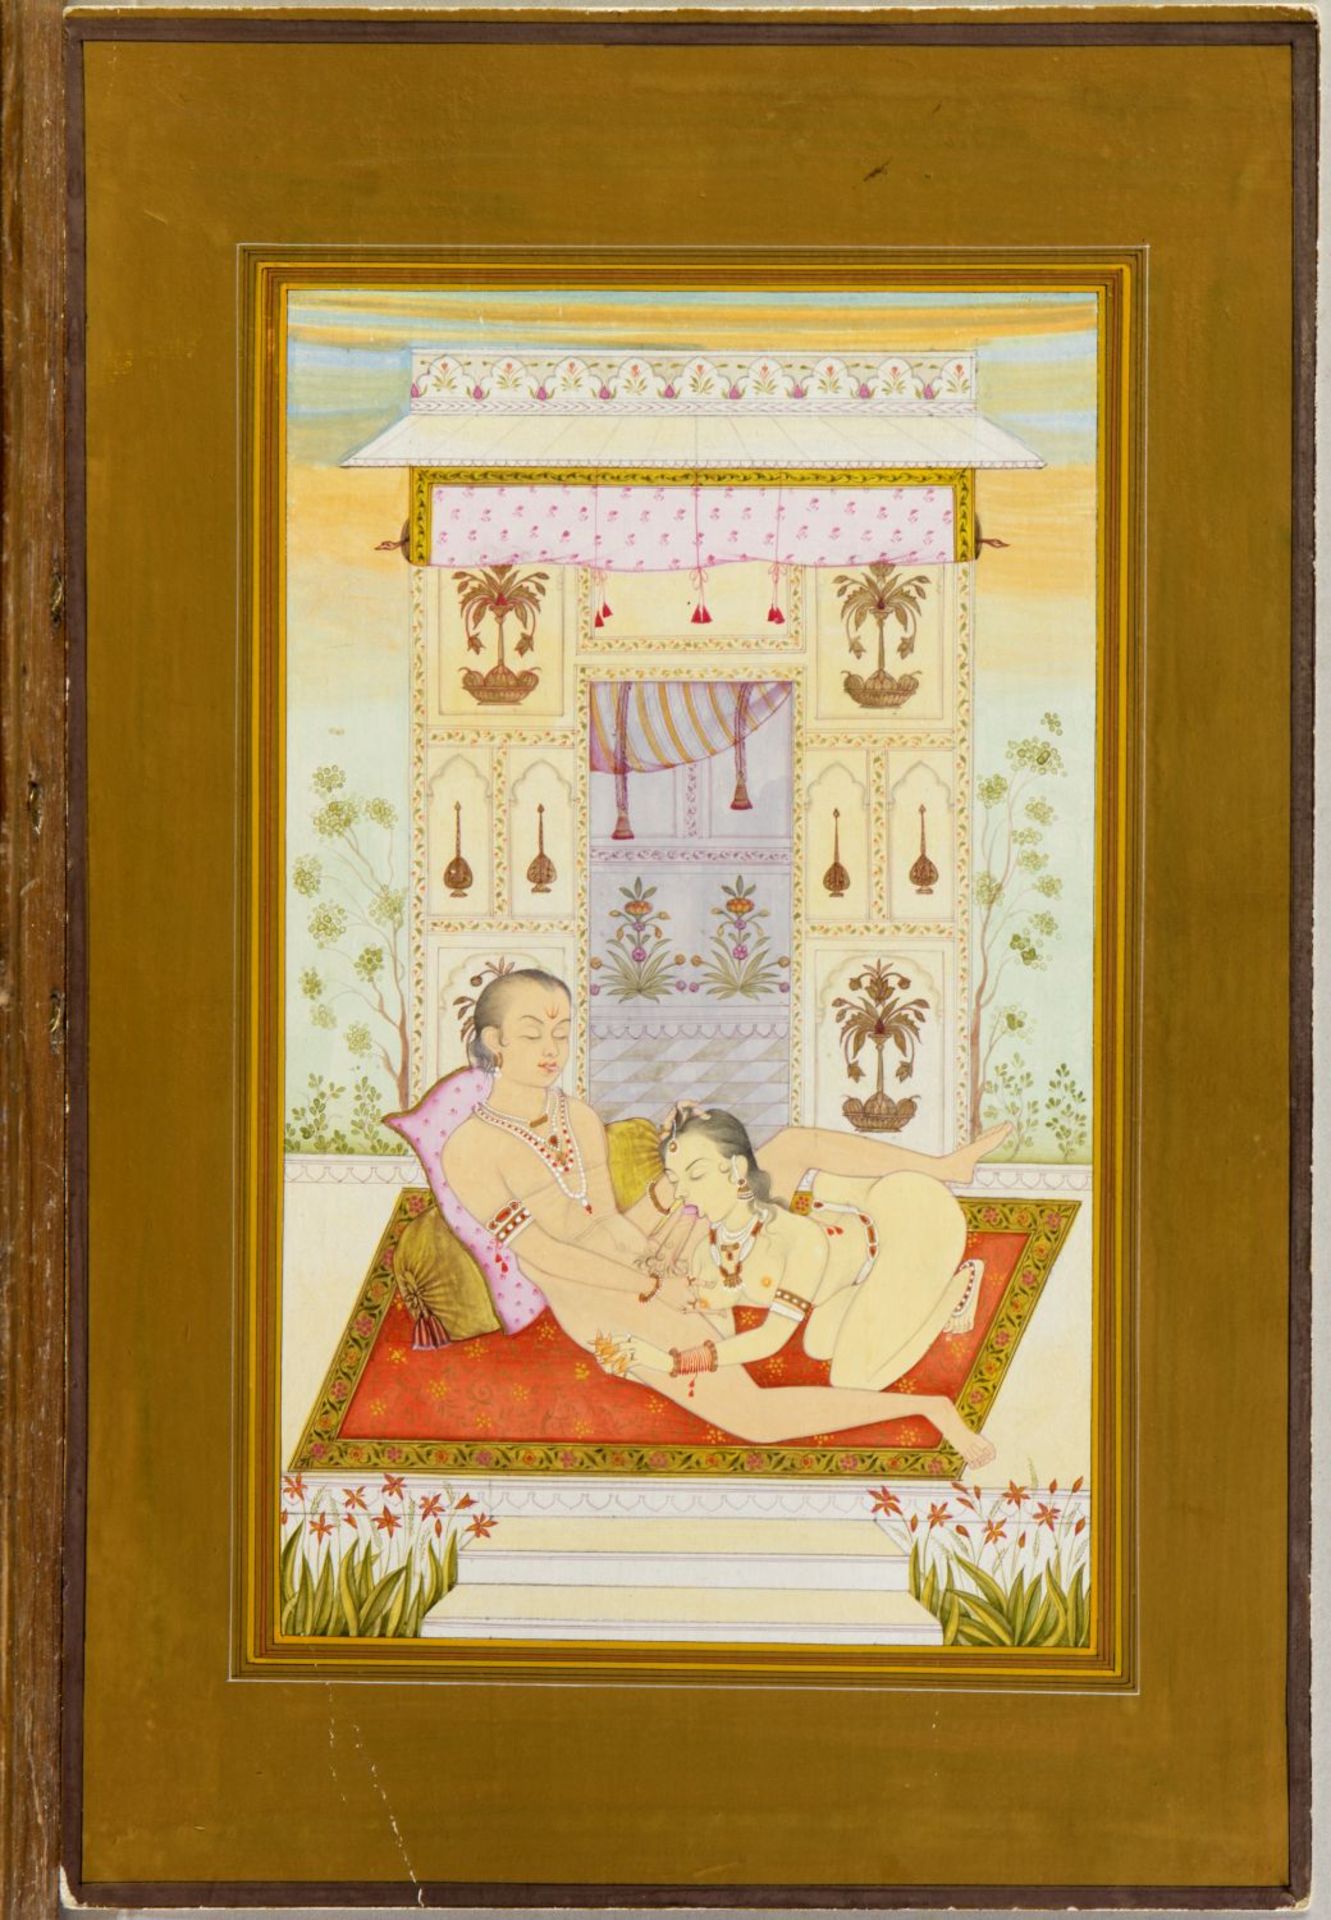 Indien, Anf. 20. Jh. Erotische Darstellungen. 4 Gouachen. Bis 33 x 21,5 cm. - Bild 2 aus 5